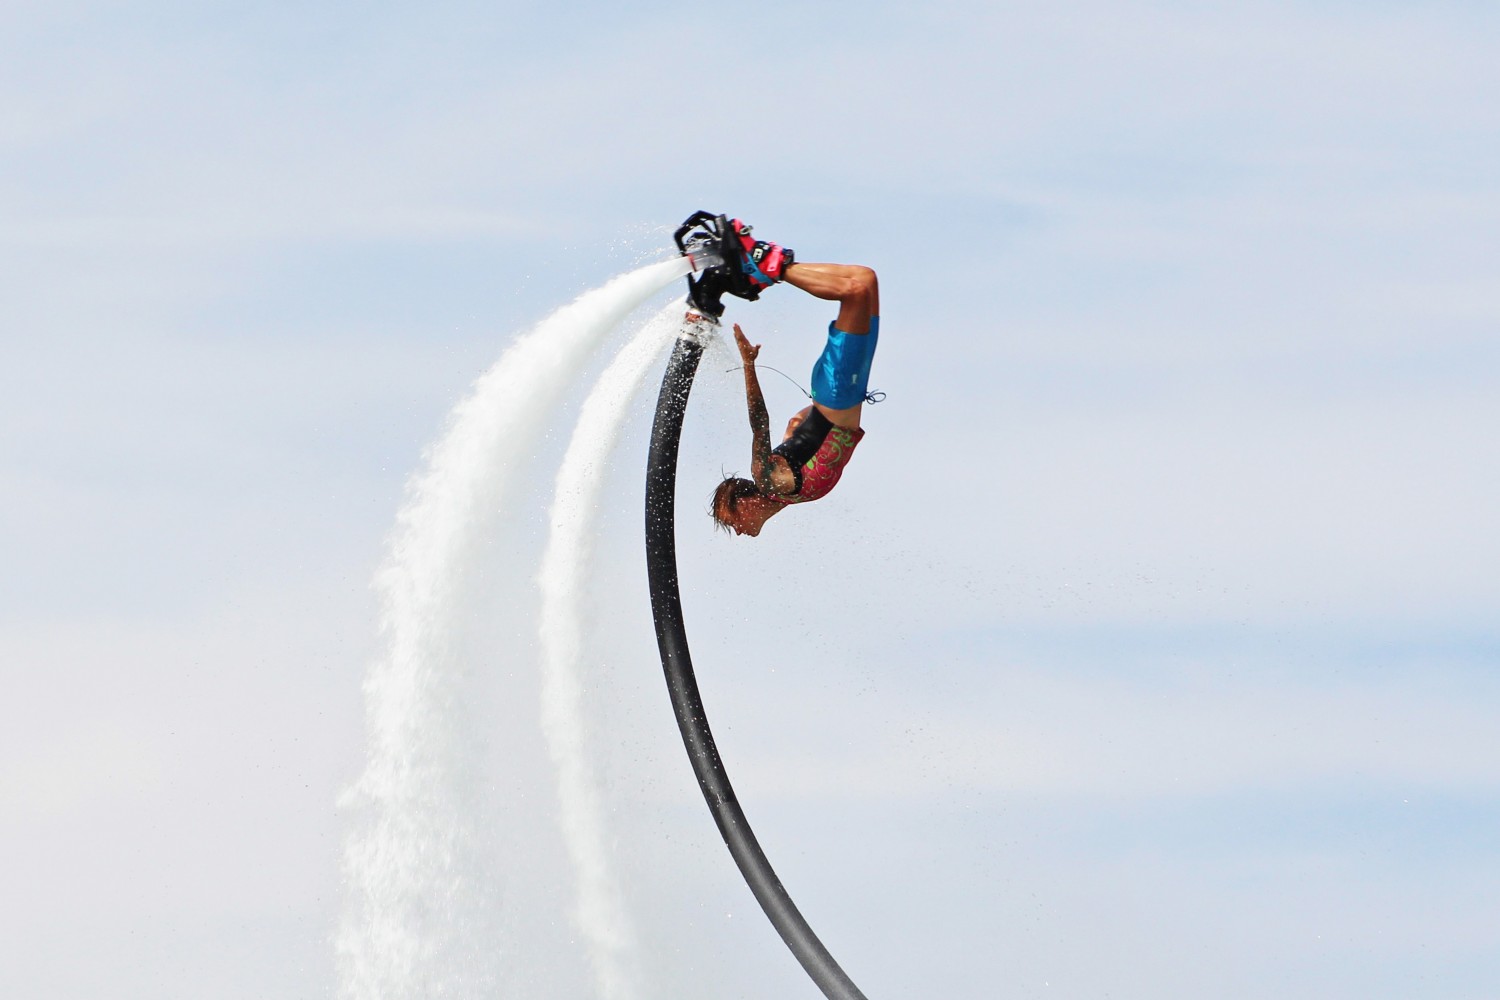 Flyboard Water Hoverboard Rental San Diego Red Bull Air Race